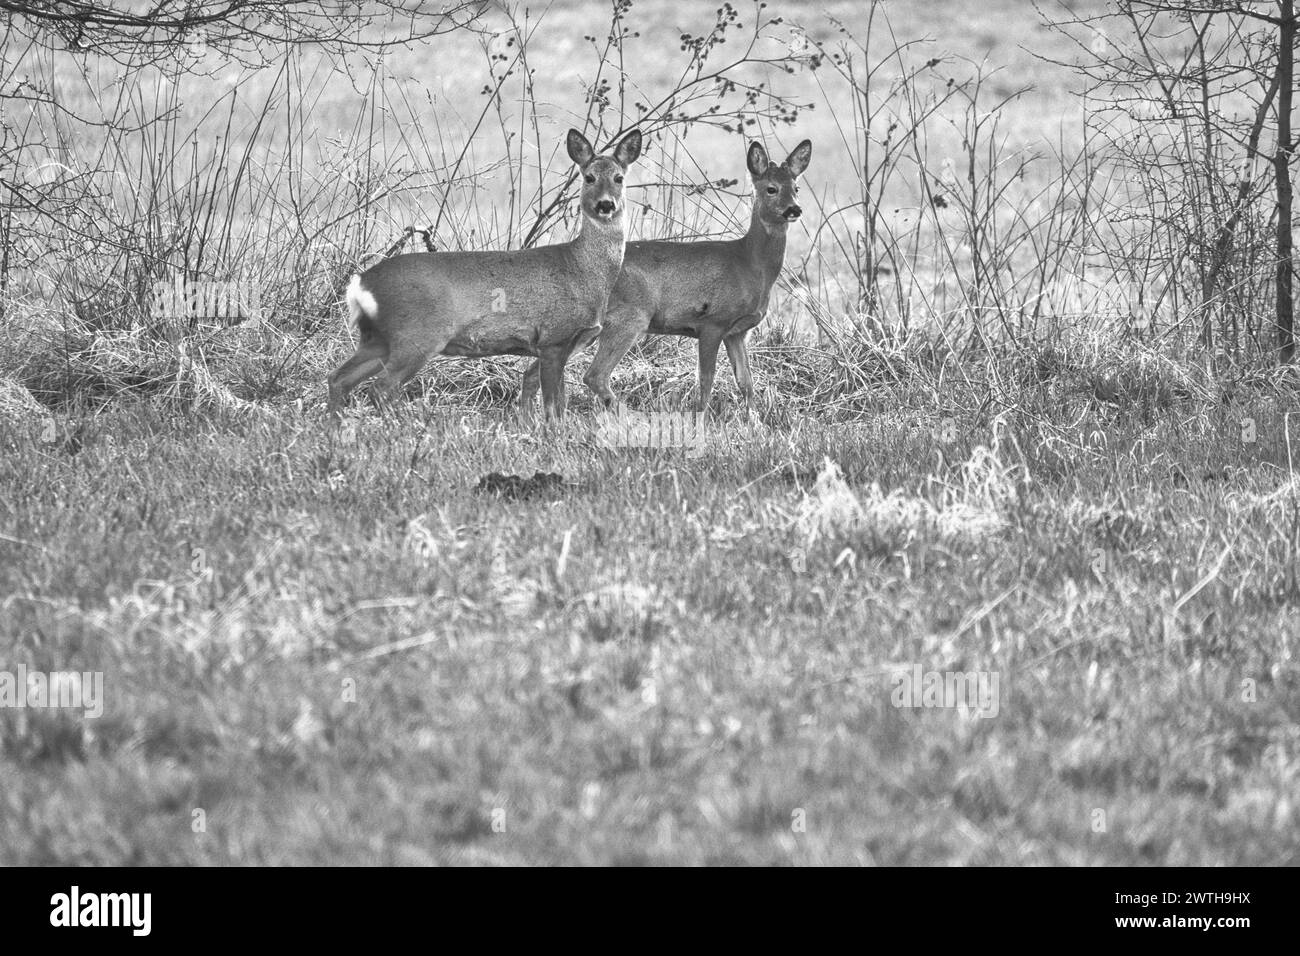 Cerf sur une prairie, attentif et se nourrissant en noir et blanc. Caché parmi les buissons. Photo animalière de la nature Banque D'Images